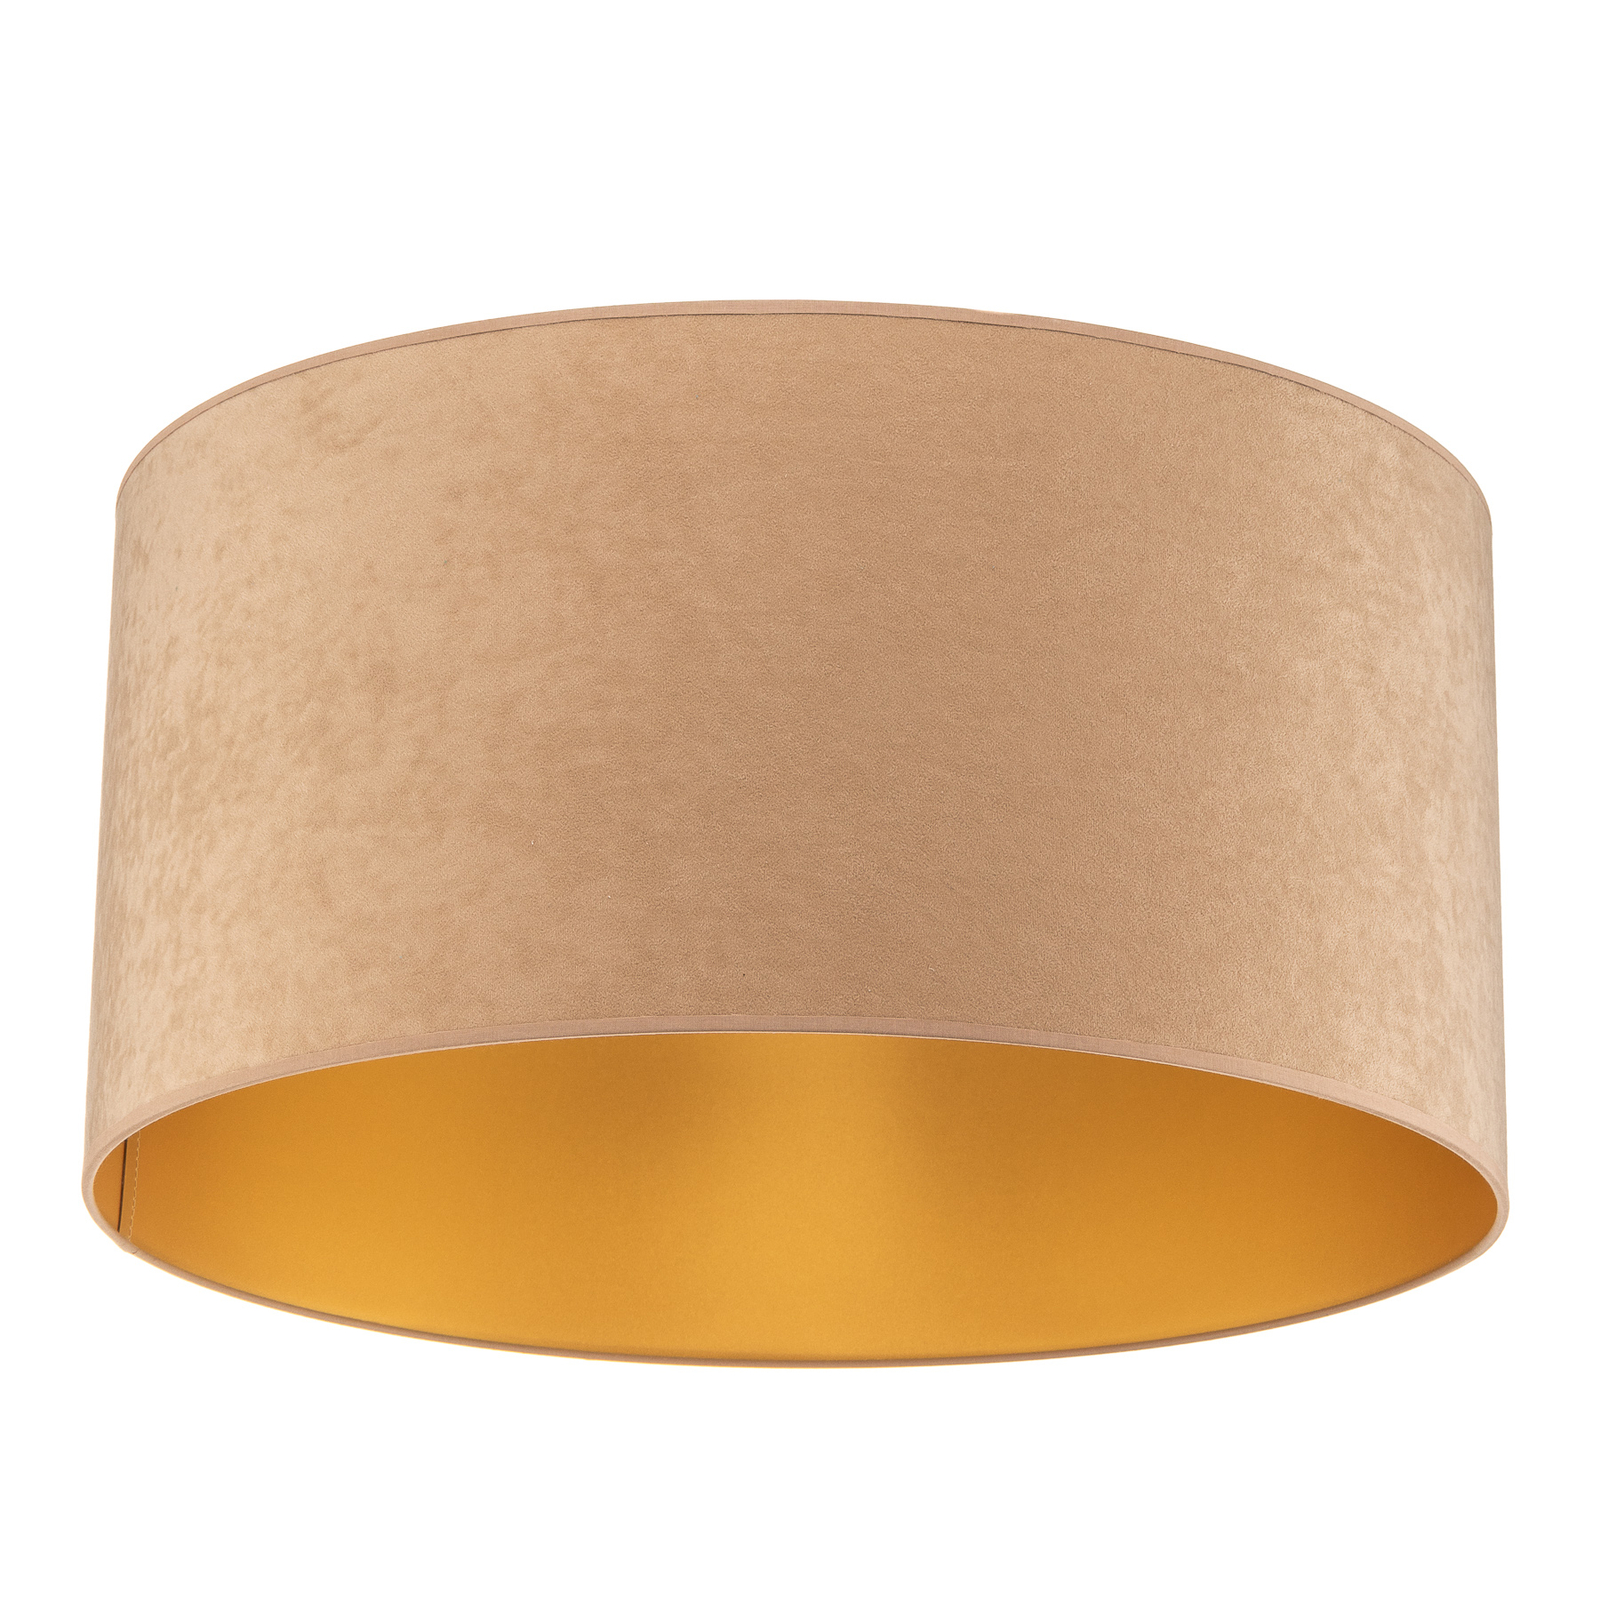 Plafondlamp Golden Roller Ø 60cm beige/goud